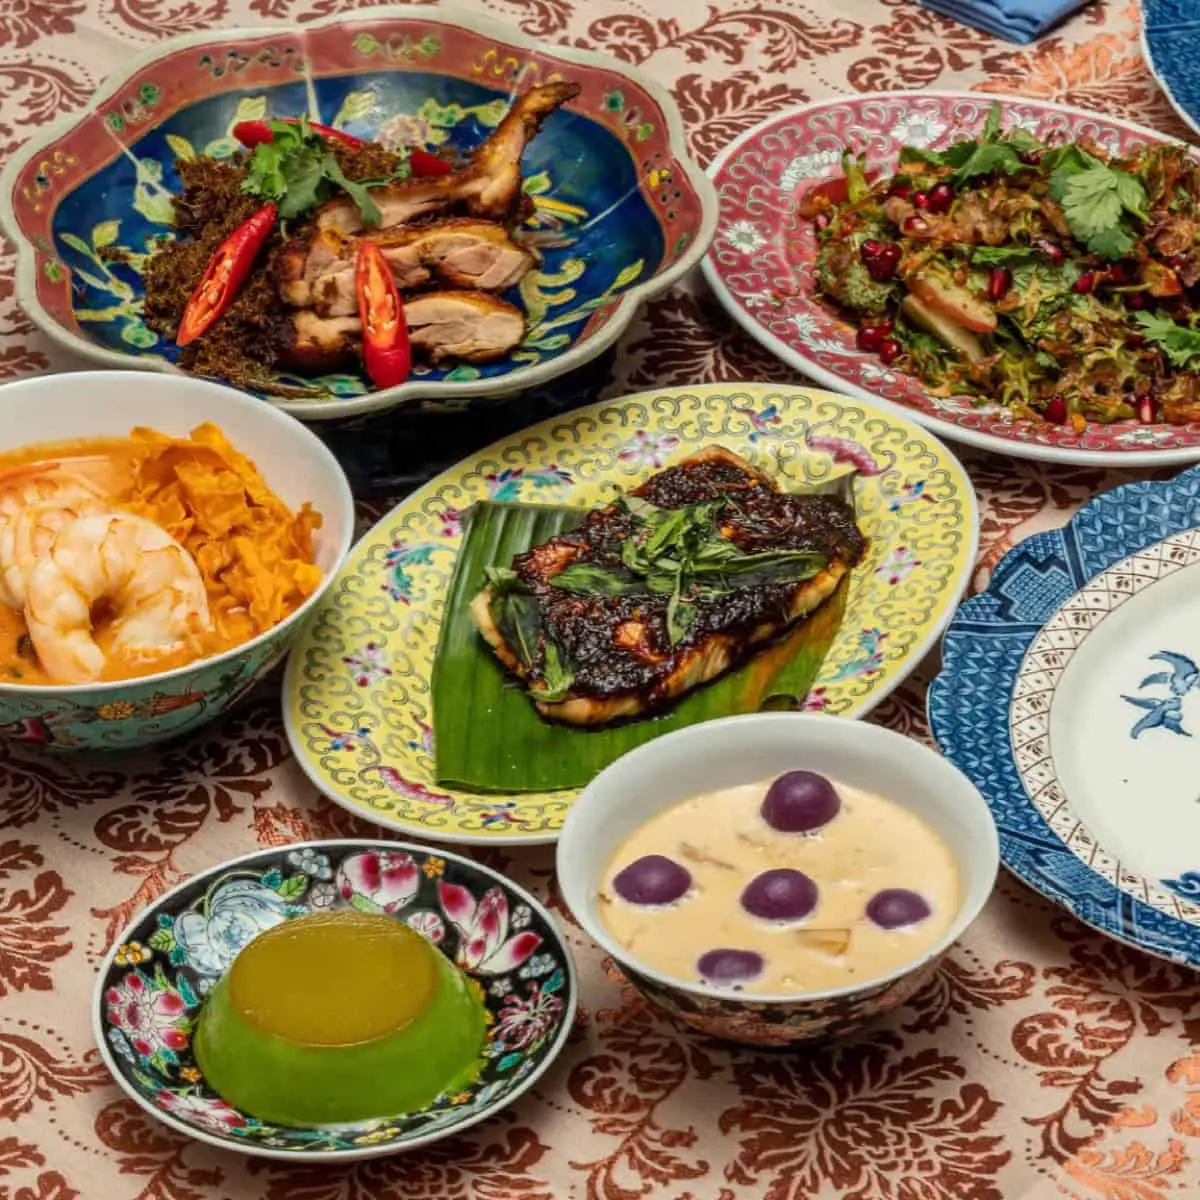 Savoury Tingkat food set from Kebaya